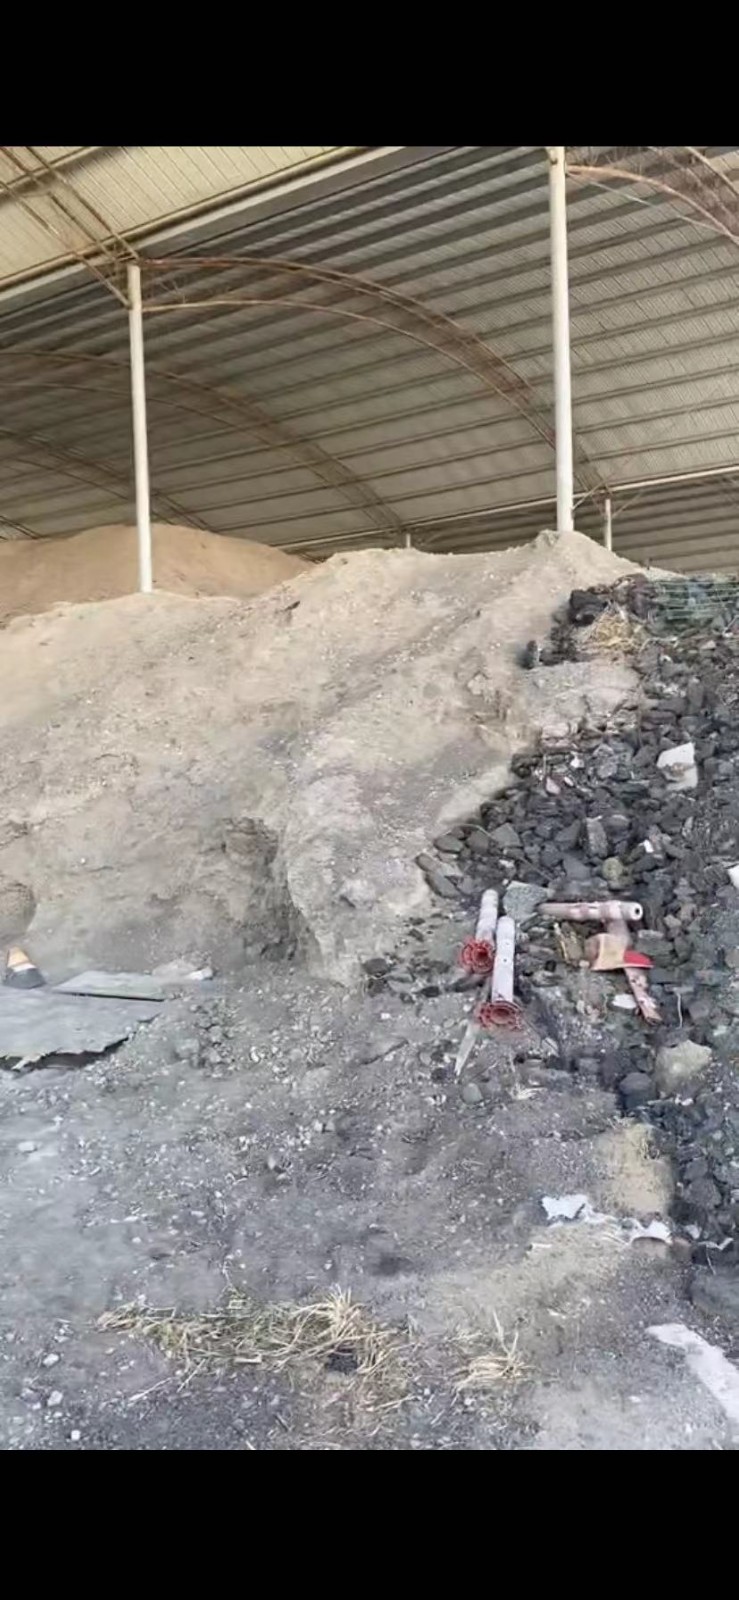 安徽滁宁高速公路开发有限公司所属铺设高速公路后剩余建筑材料矿粉拍卖公告